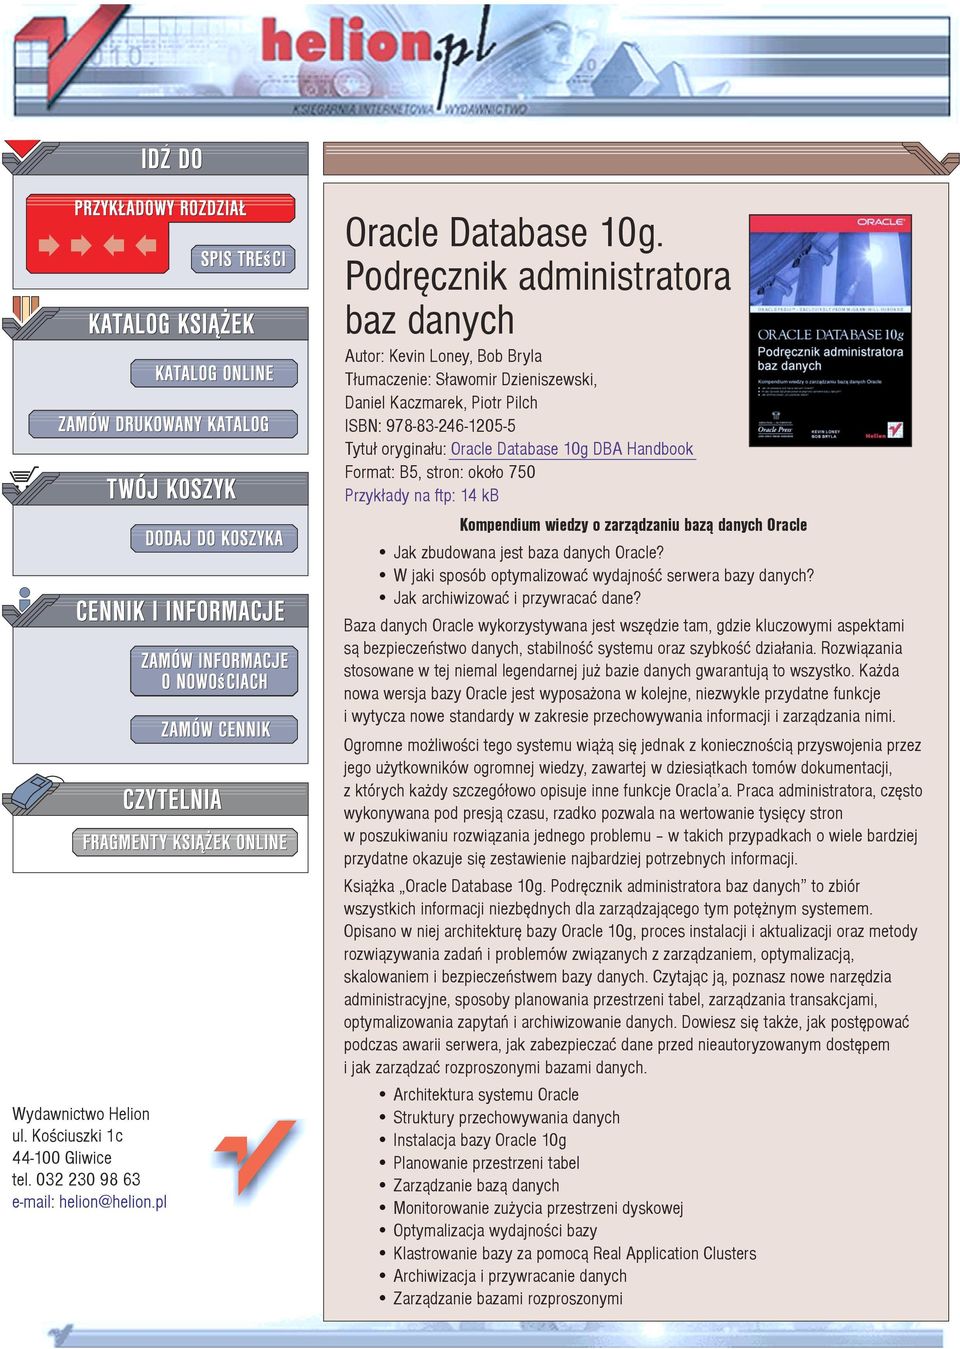 Handbook Format: B5, stron: oko³o 750 Przyk³ady na ftp: 14 kb Kompendium wiedzy o zarz¹dzaniu baz¹ danych Oracle Jak zbudowana jest baza danych Oracle?